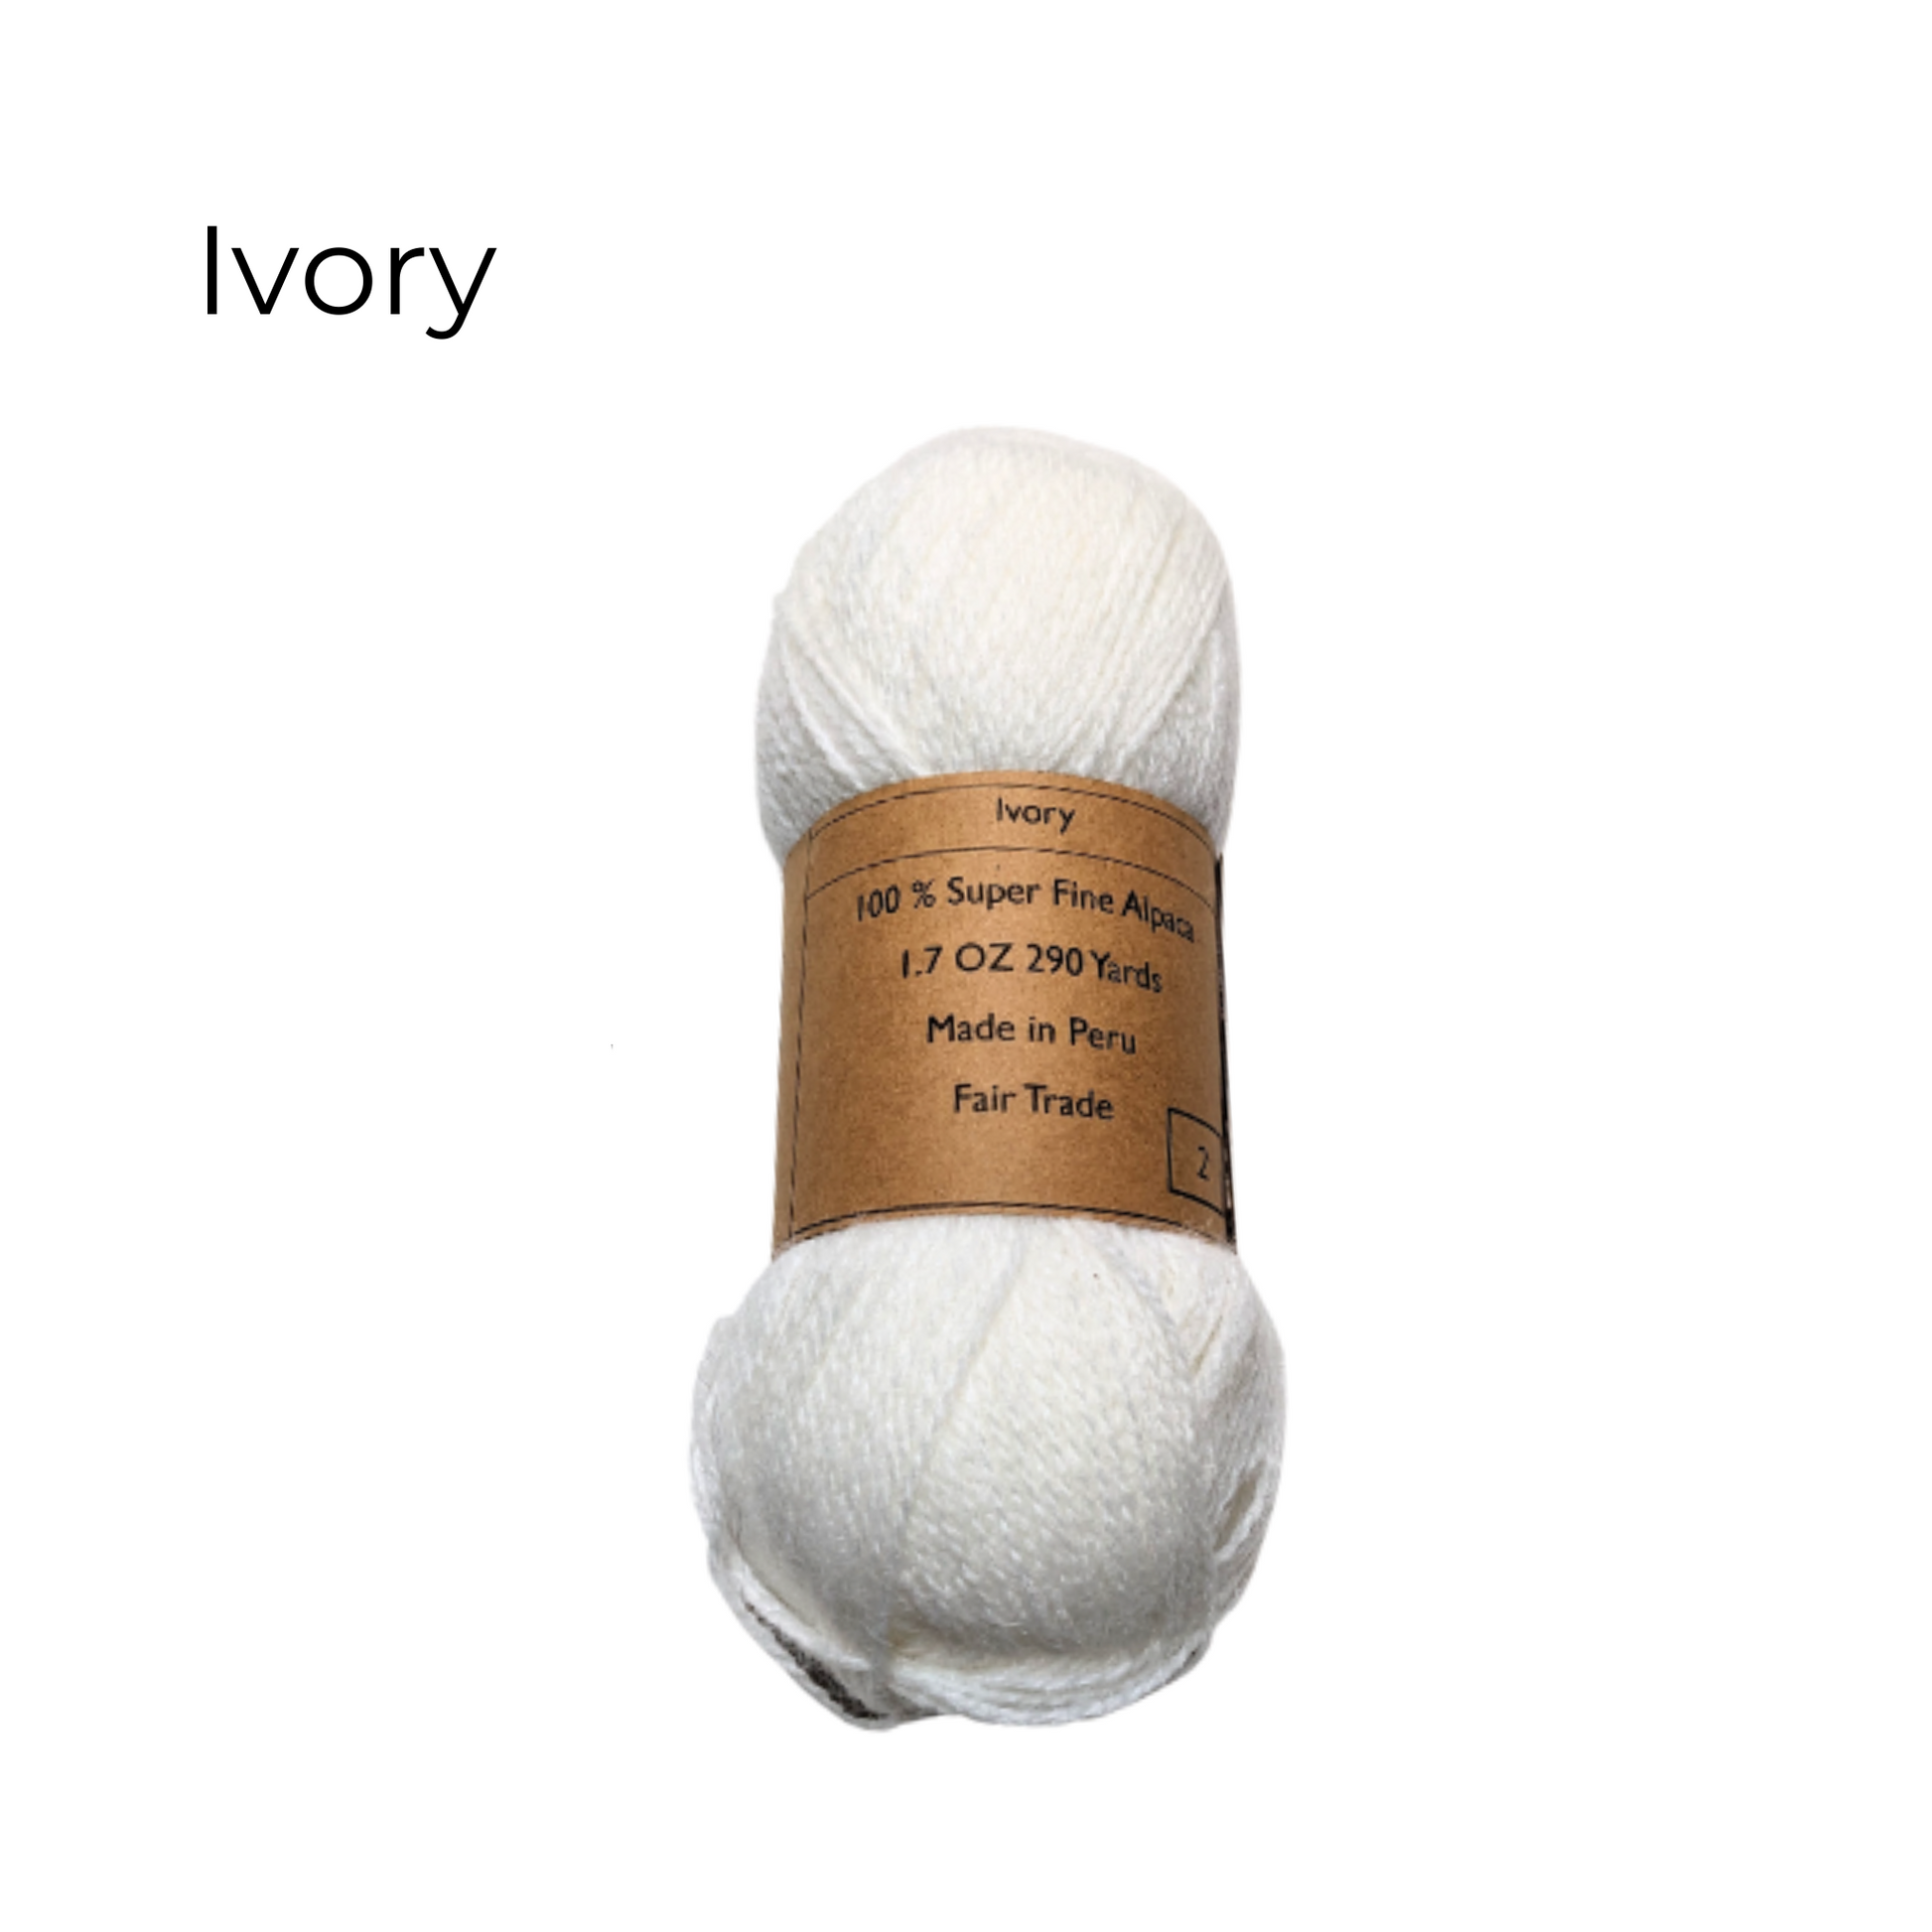 100% Baby Alpaca Yarn Luluy #3 DK - 109 Yards Total - ONE Skein